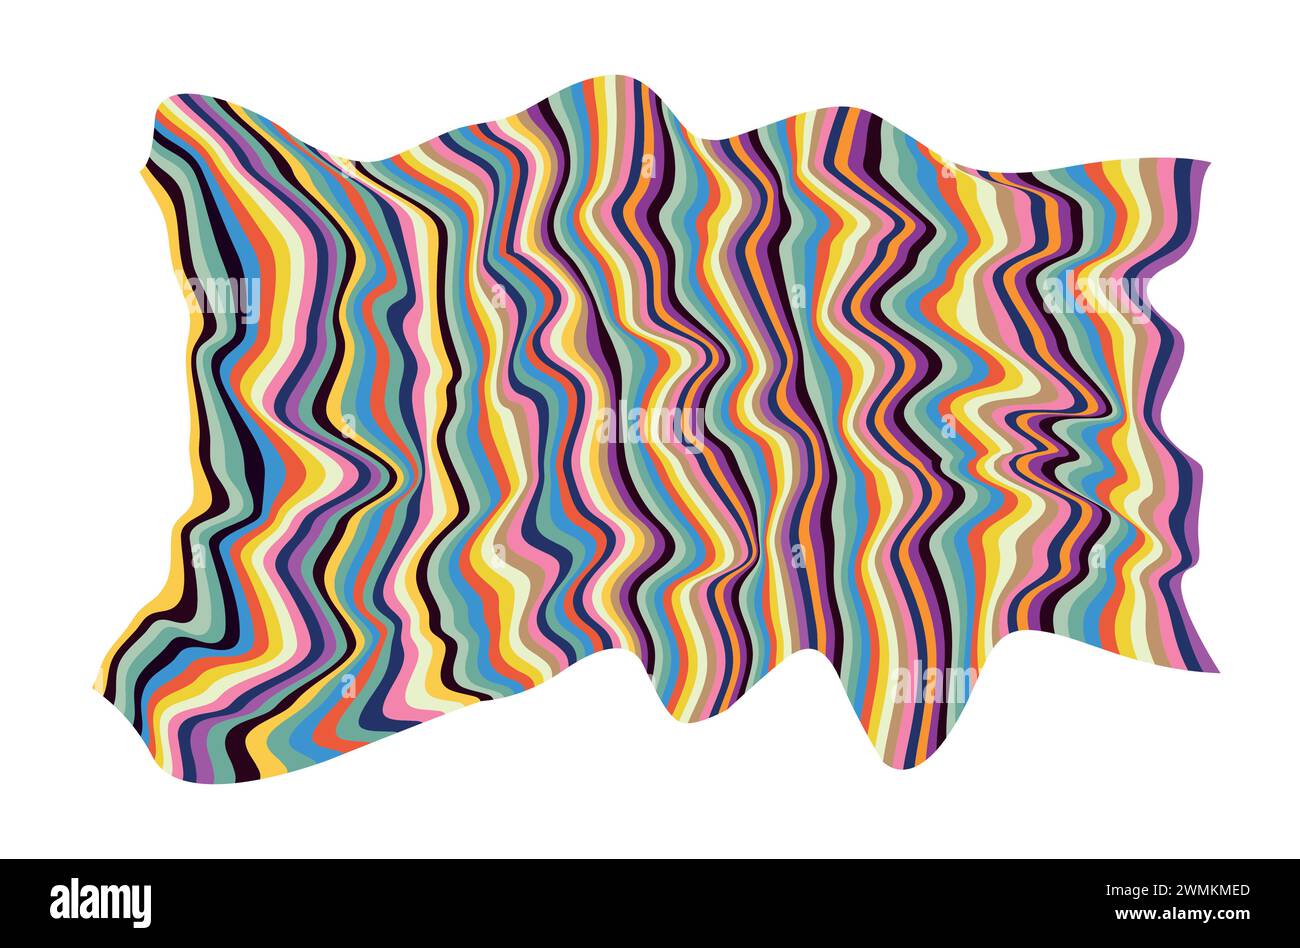 Vektorillustration des modernen bunten welligen flüssigen nahtlosen Musters der abstrakten fluiden Linien im Stil der Tapetenabdeckung Vorlage. Stock Vektor